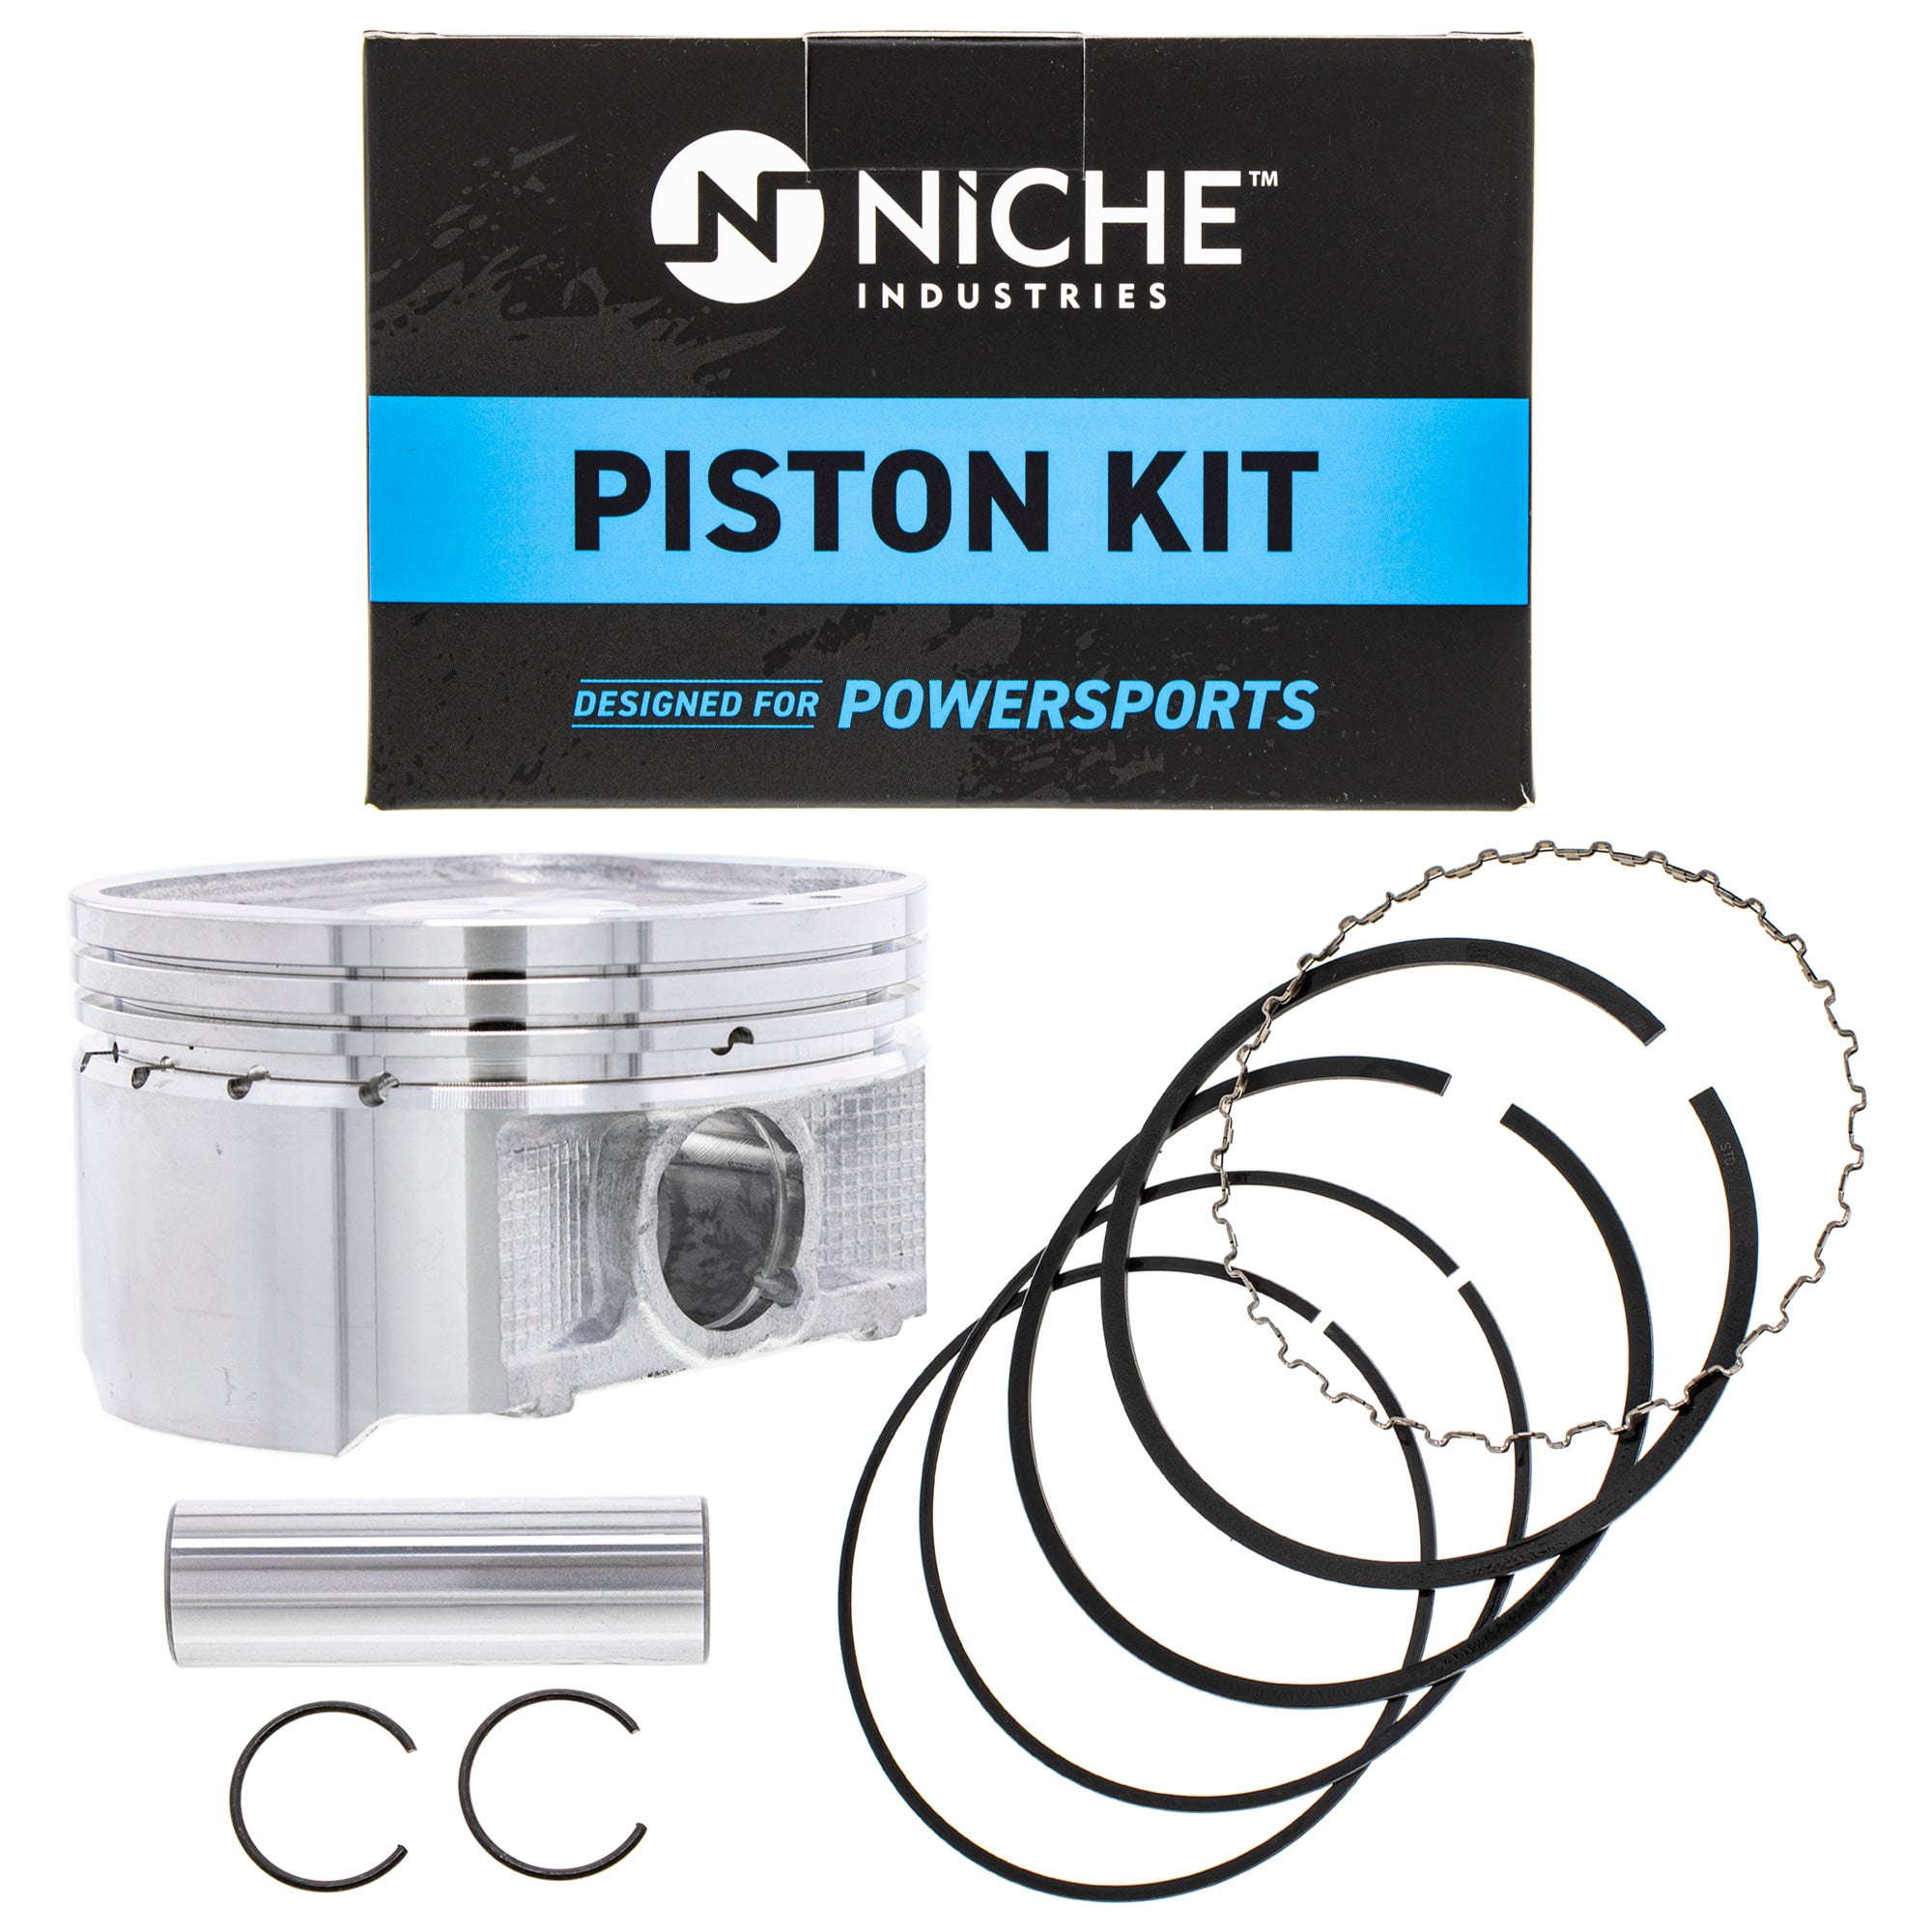 NICHE MK1001150 Piston Kit